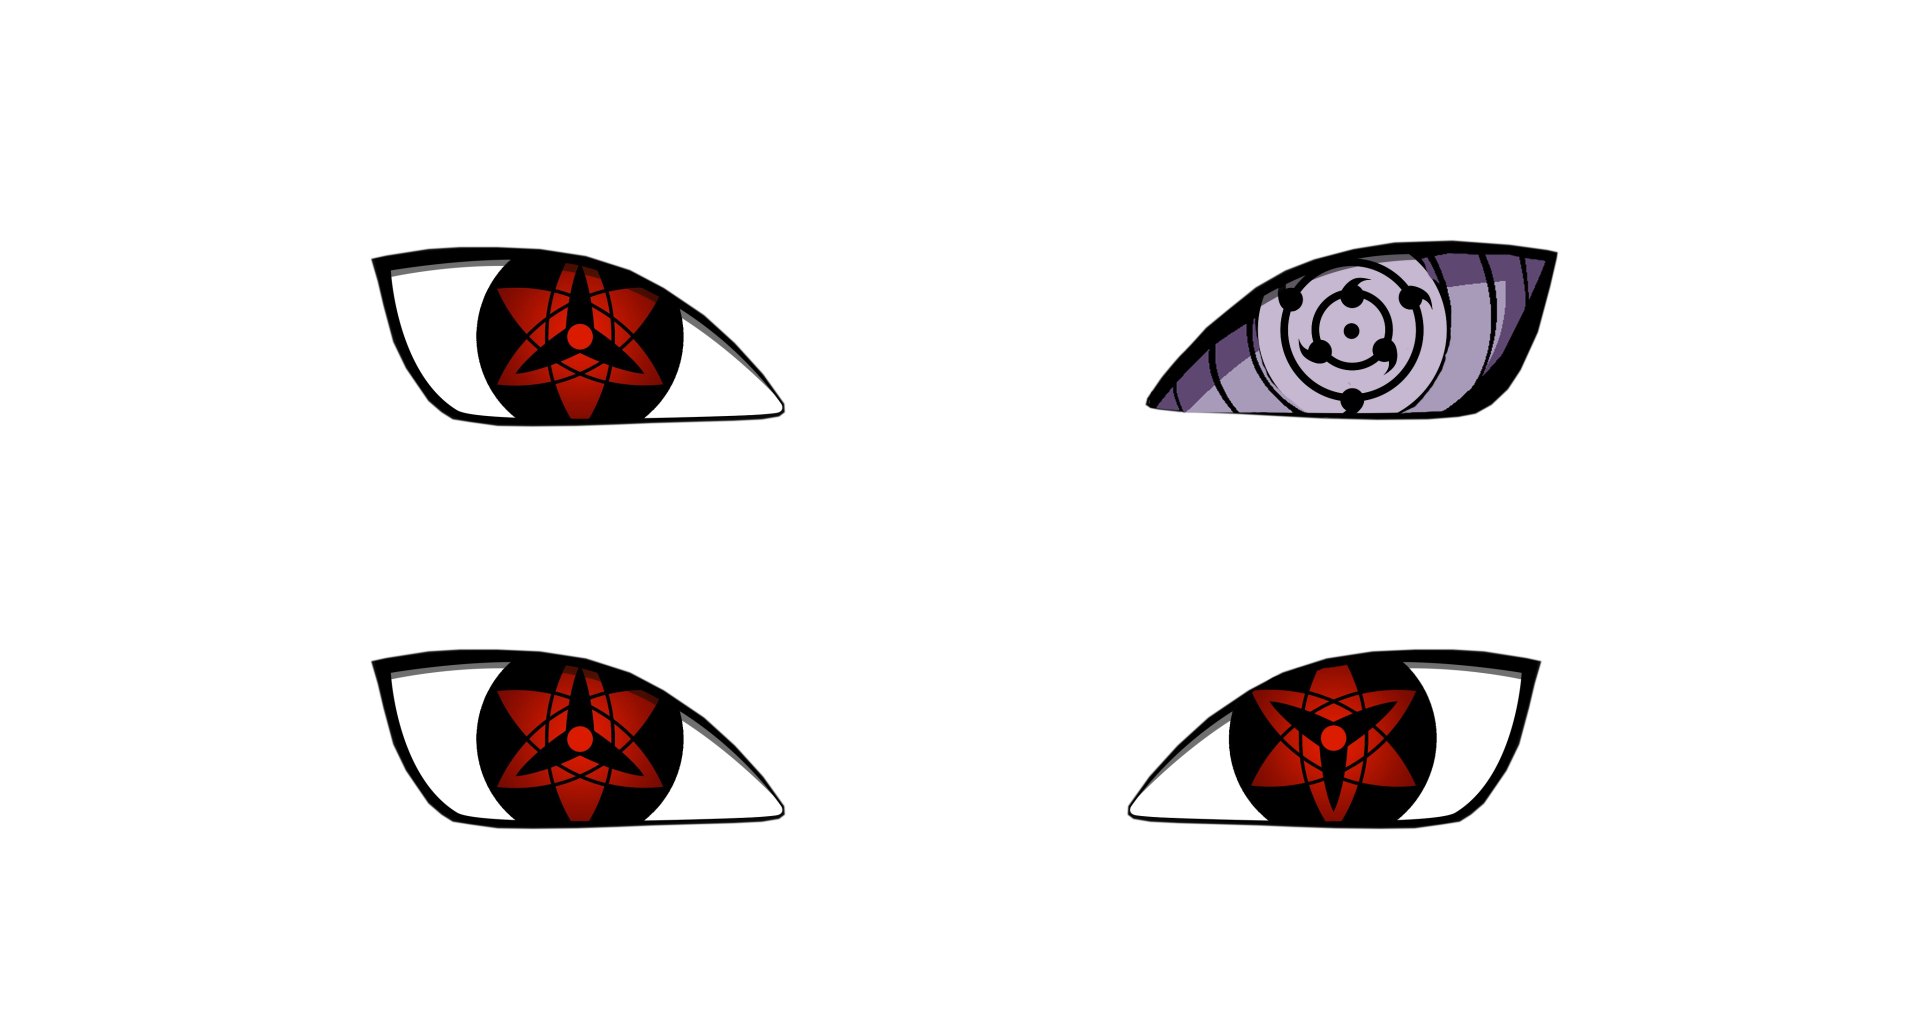 1. Sasuke Uchiha Eye Tattoo - wide 2